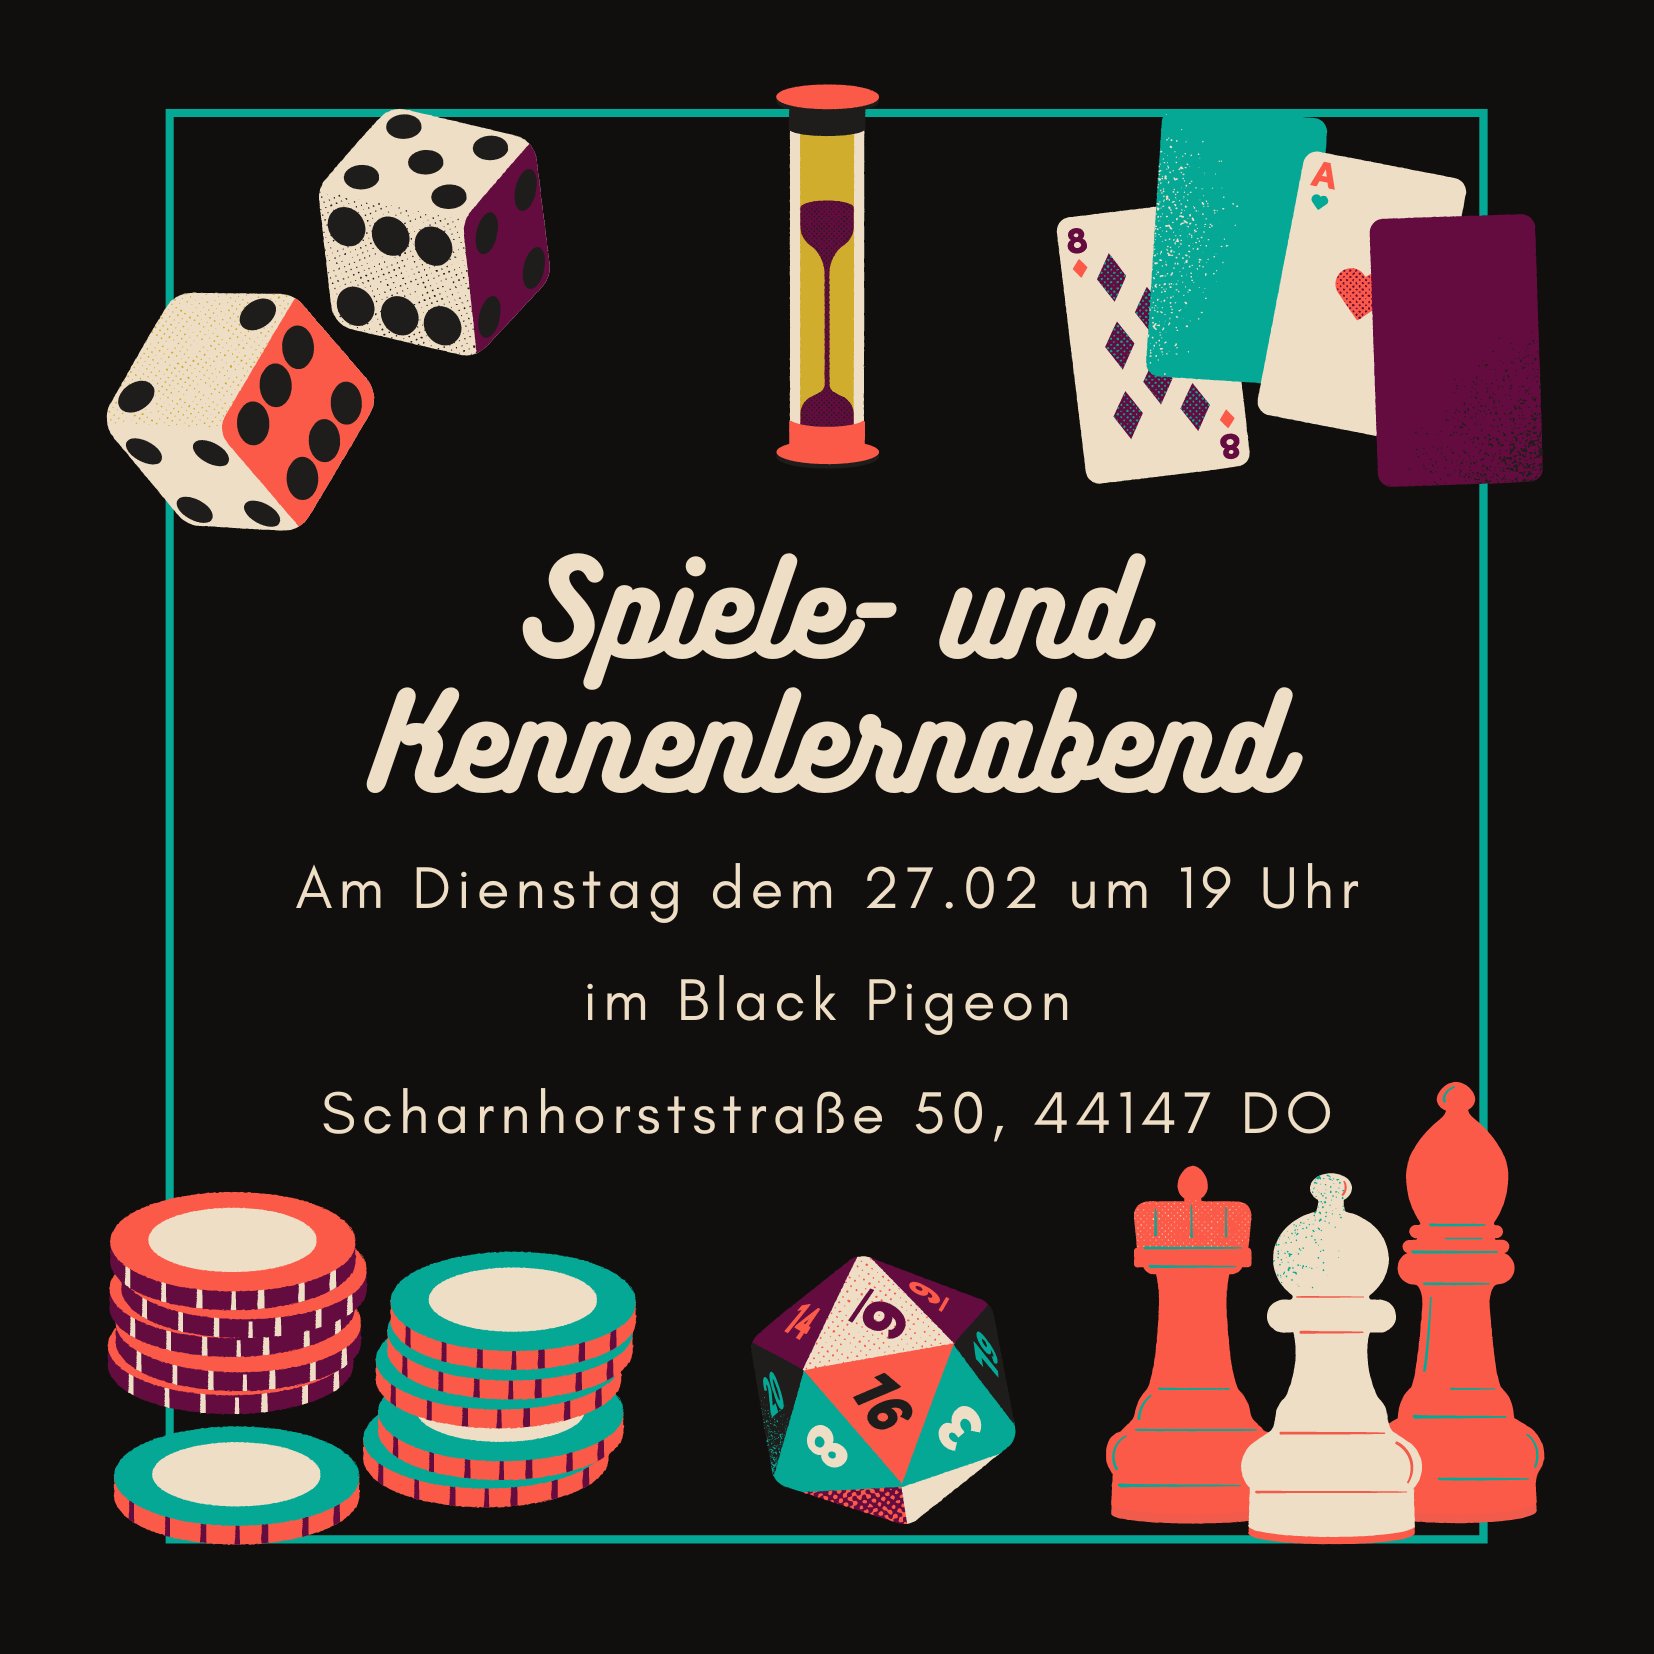 Spiele- und Kennenlernabend am 27.02. ab 19 Uhr im Black Pigeon (Scharnhorststraße 50, 44147 Dortmund)